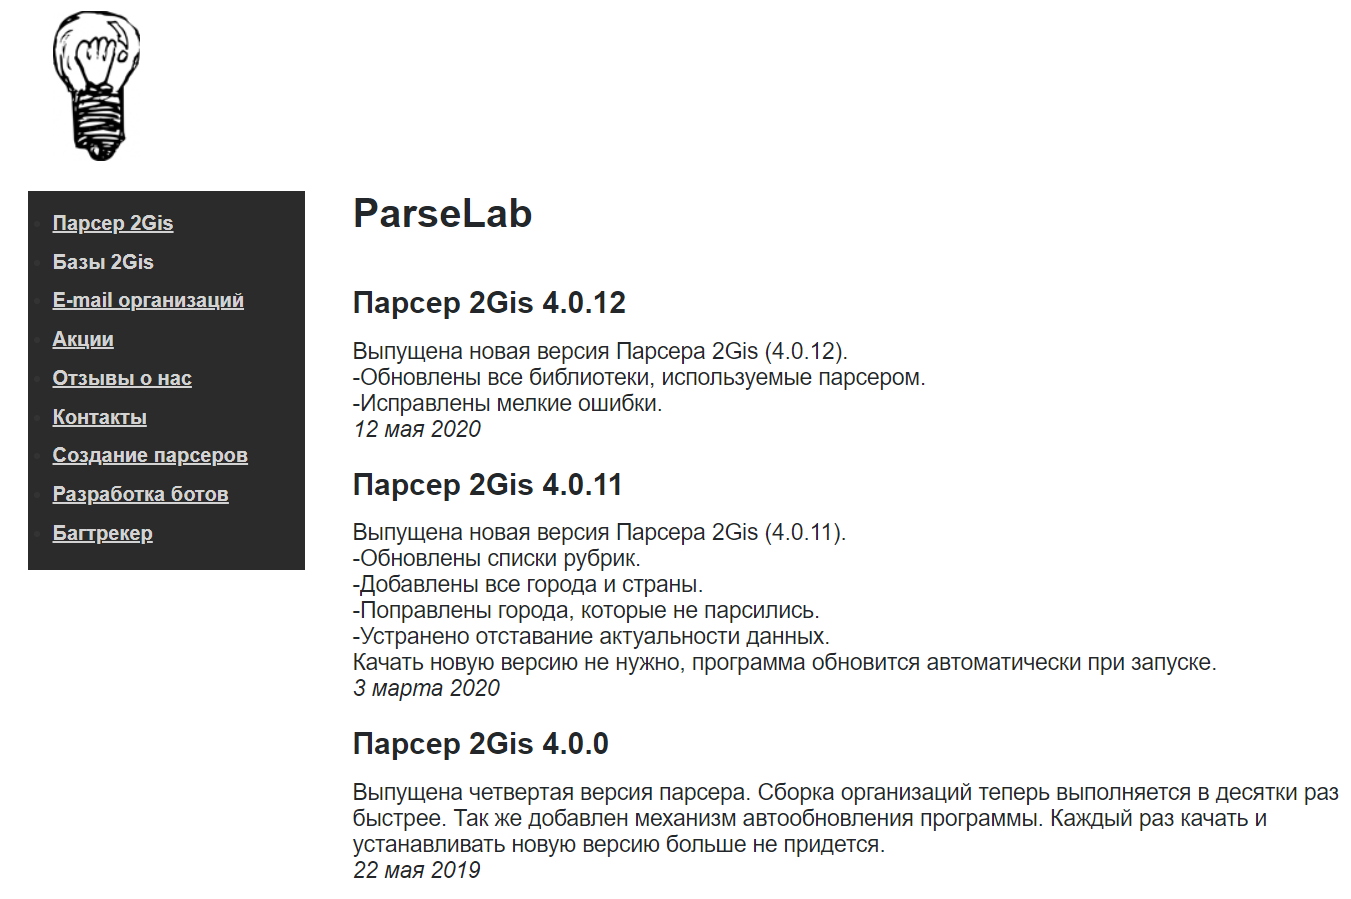 Топ инструментов таргетолога: Parselab создает парсер для сбора информации с других сайтов или с каталогов